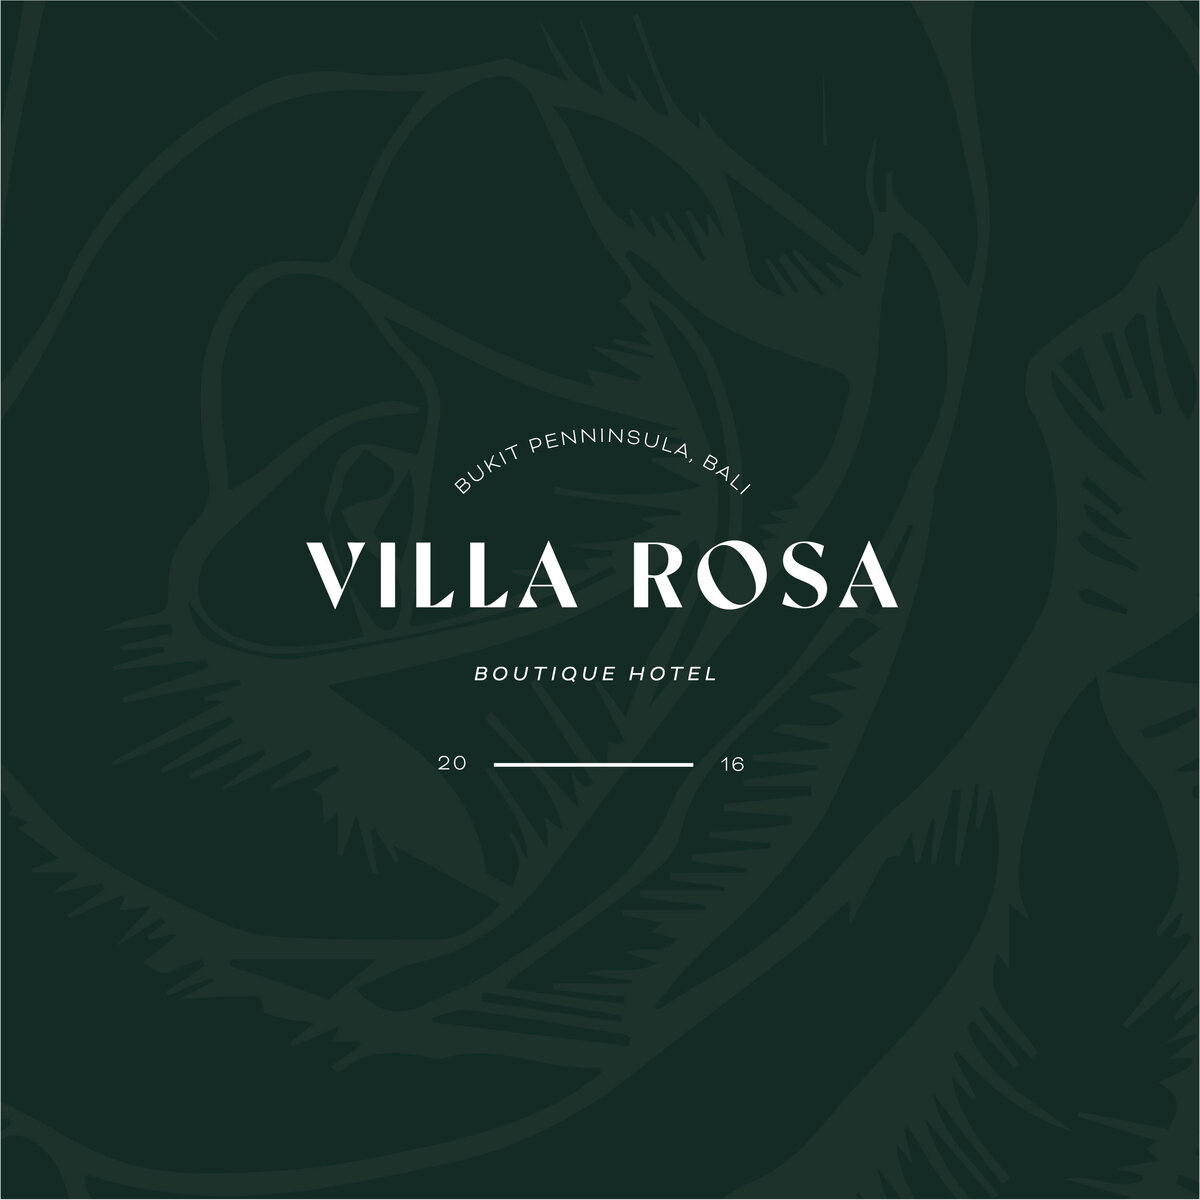 villa-rosa-assets-2.0-18